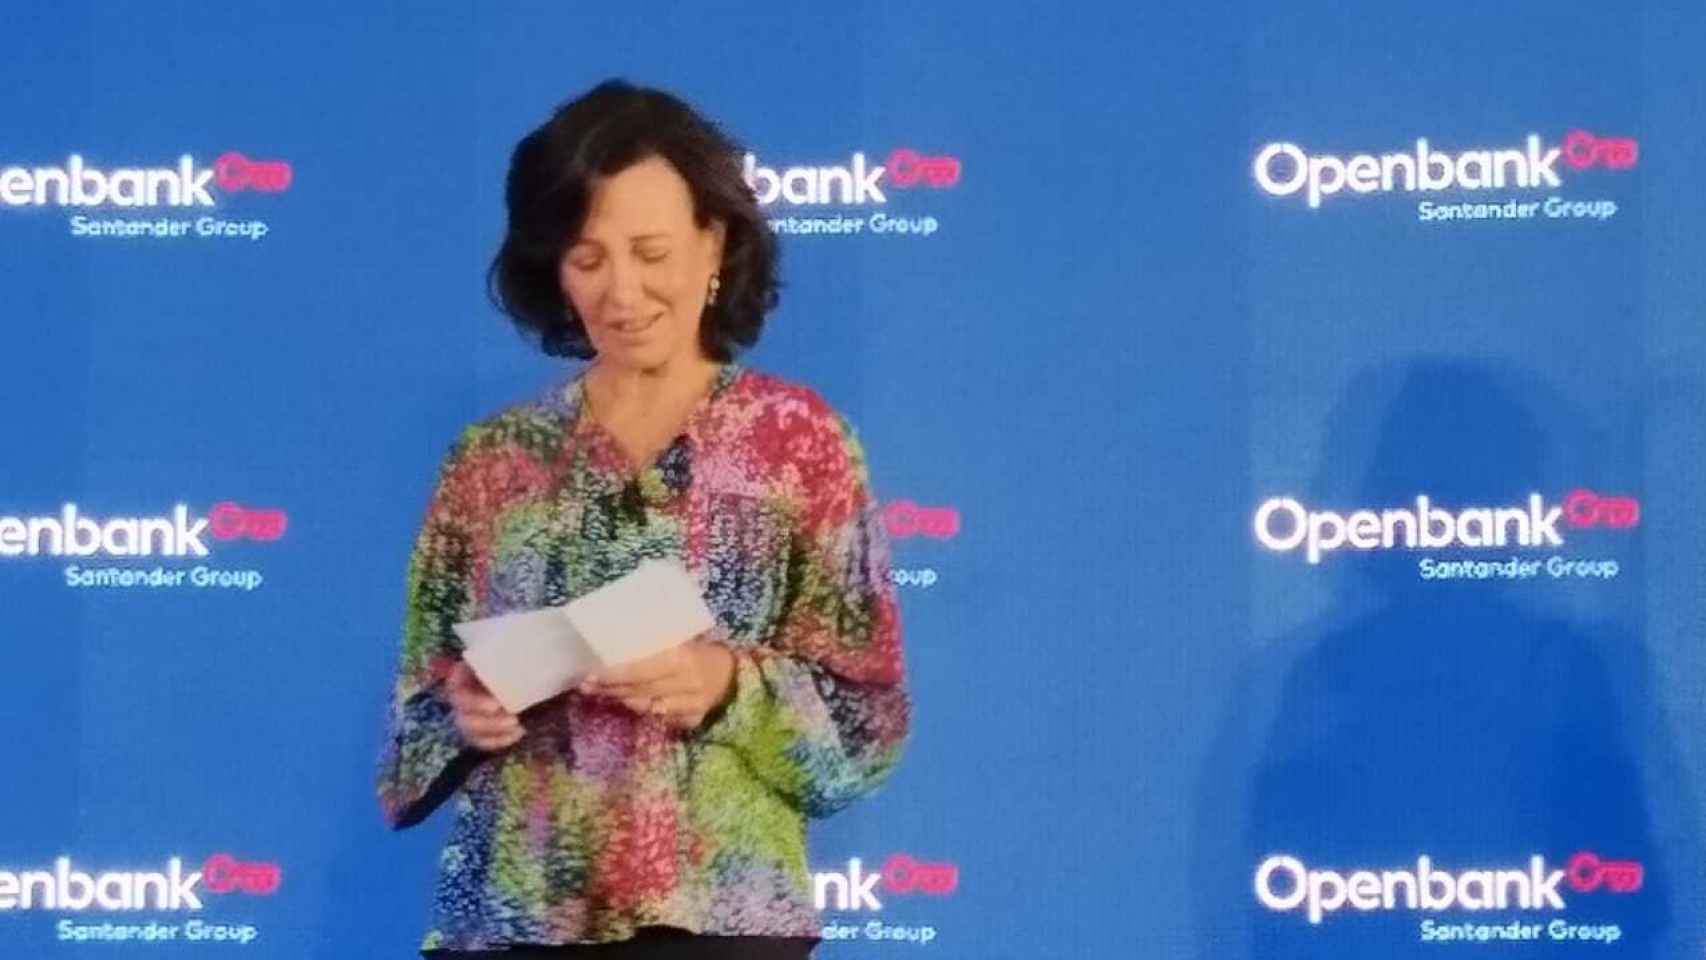 Botín lanza en Berlín la internacionalización de Openbank como emblema de una banca sostenible